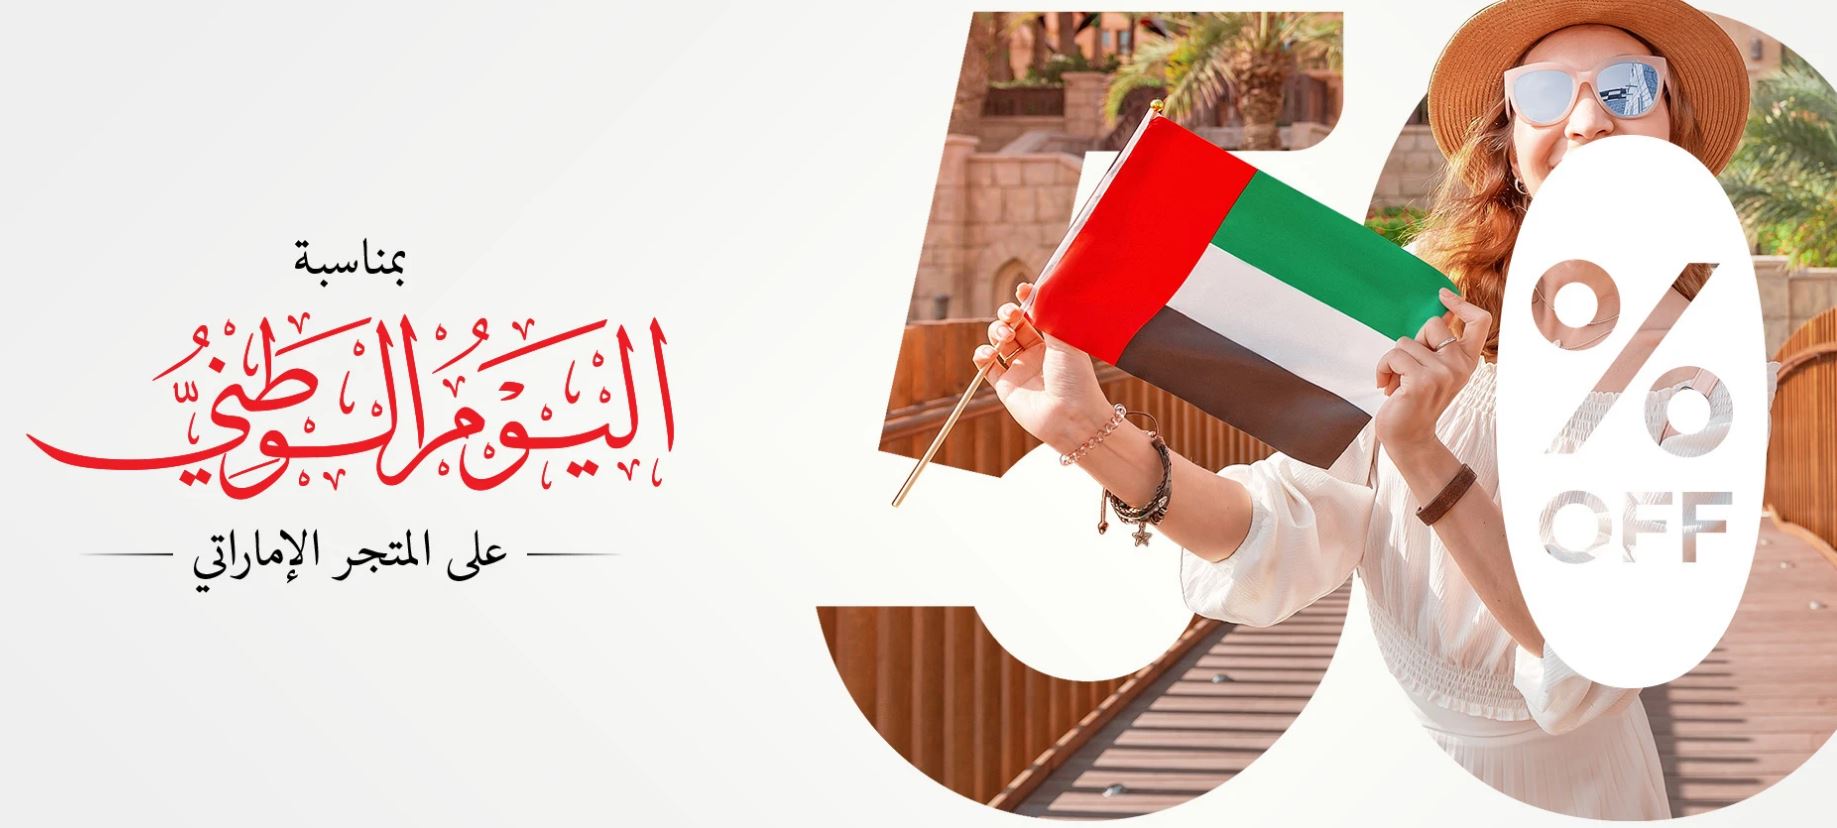 تخفيضات اليوم الوطني الاماراتي 50 متجر lebs النساء